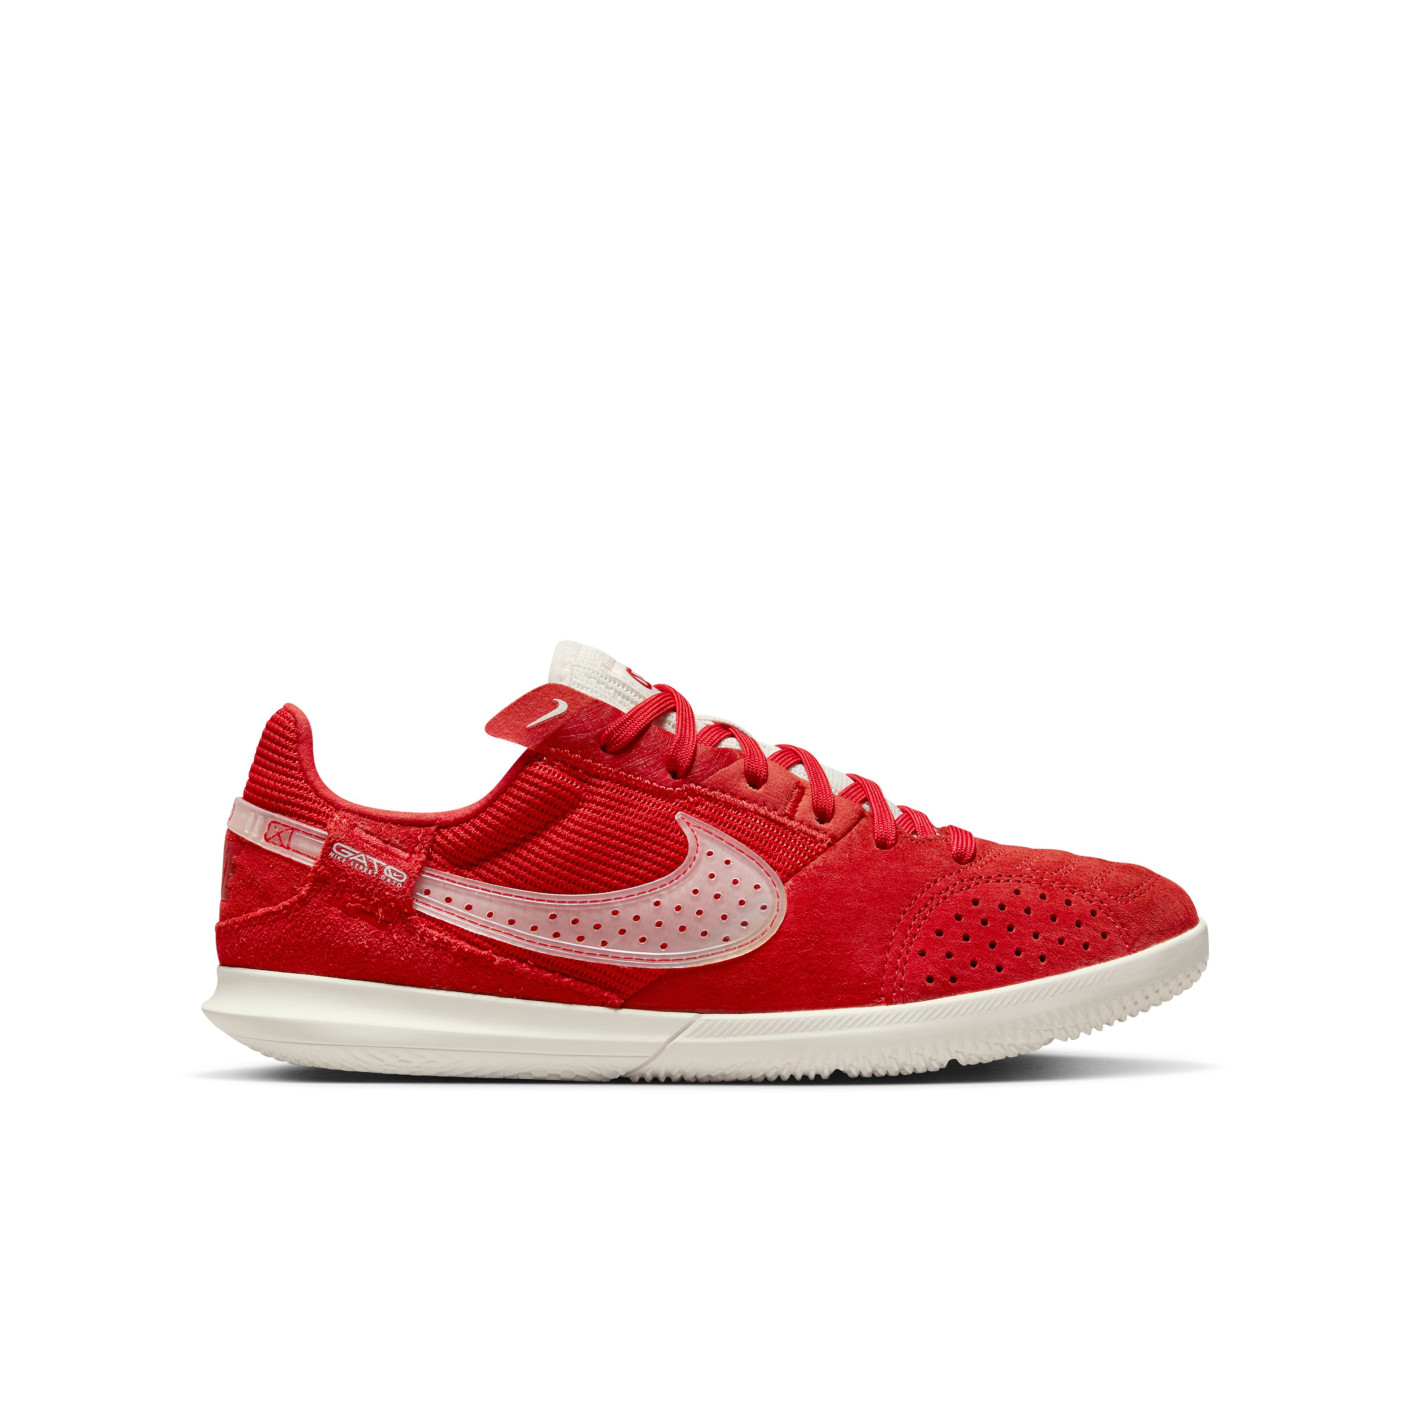 Nike Streetgato Chaussures de Foot Street Enfants Rouge Blanc